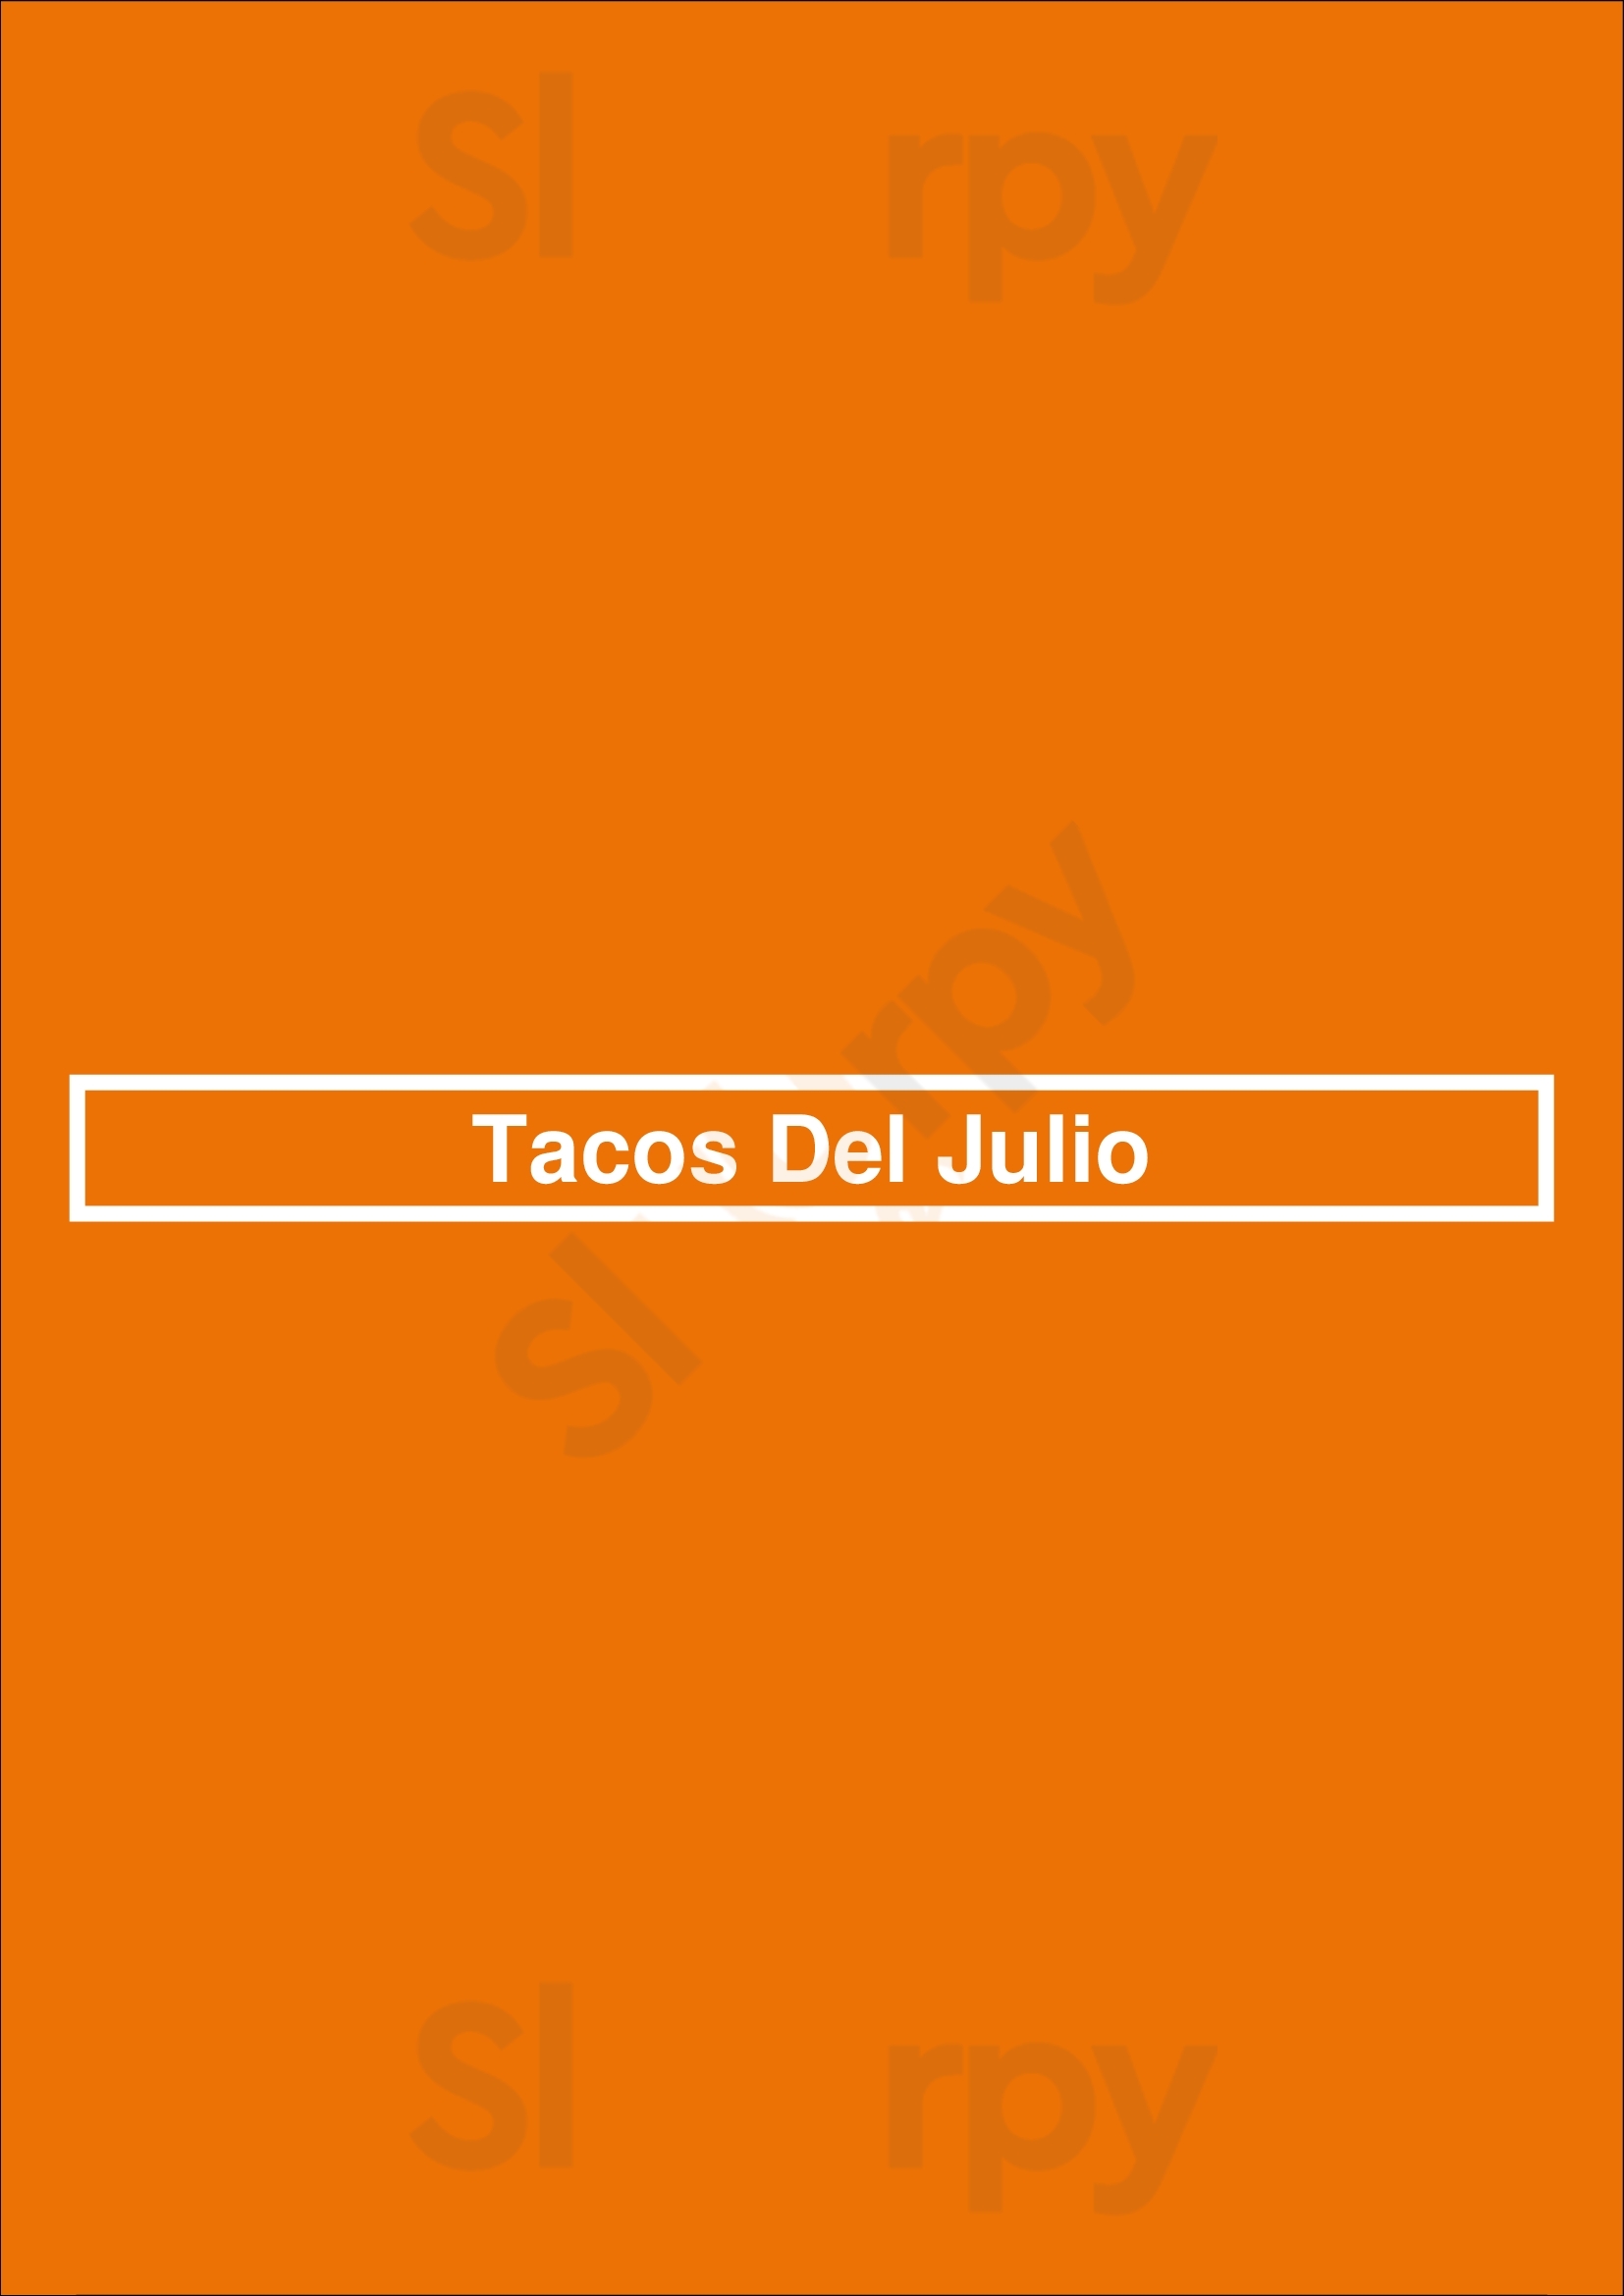 Tacos Del Julio Pasadena Menu - 1